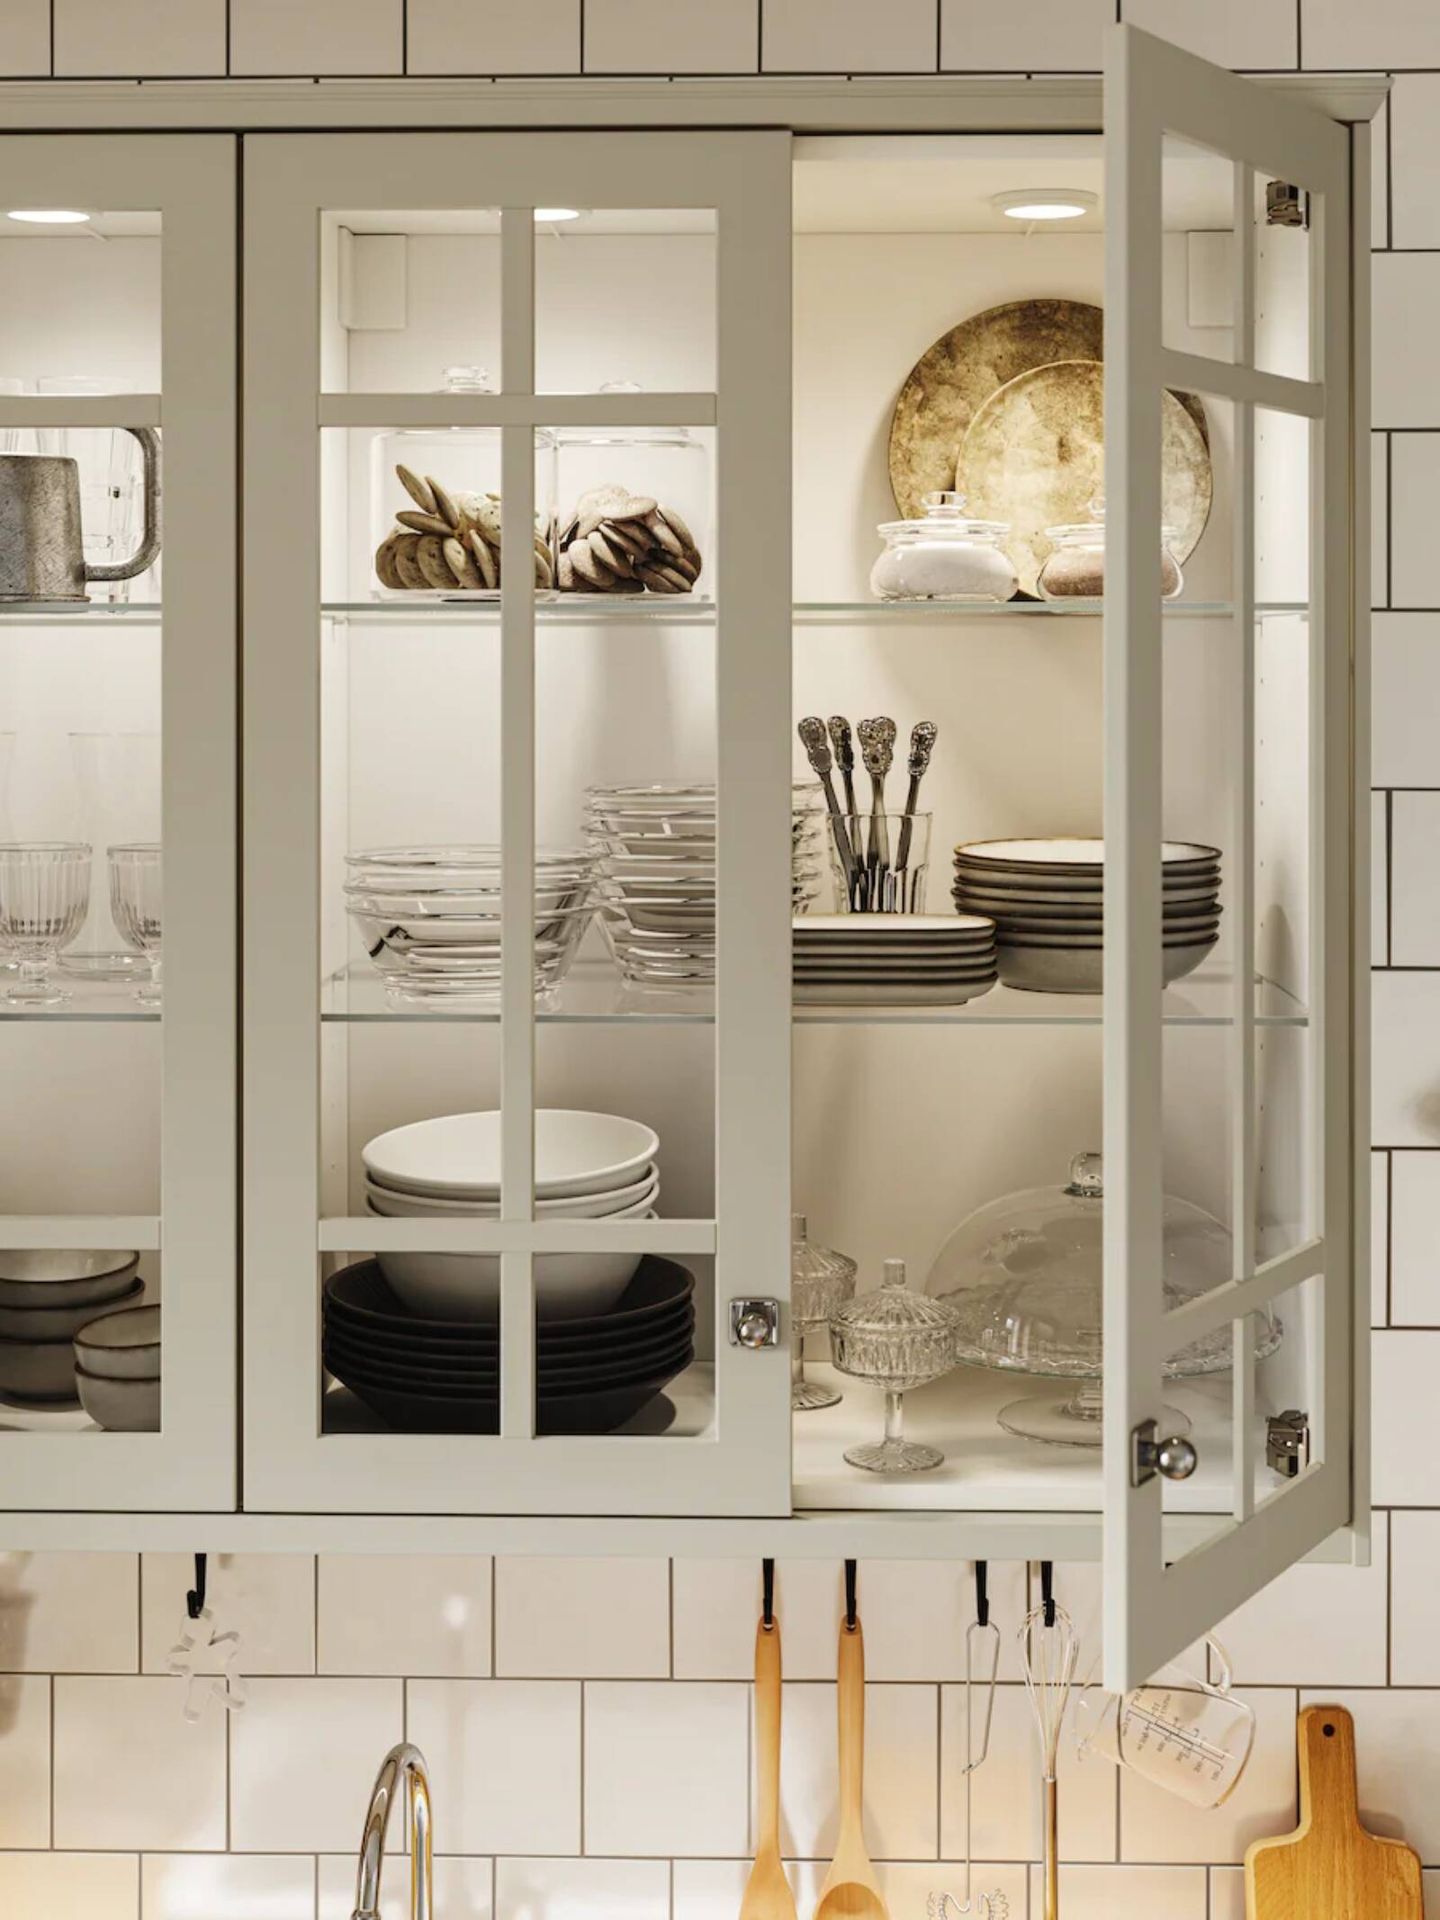 Ideas de Ikea para decorar una cocina pequeña y sacarle el mayor partido. (Cortesía)